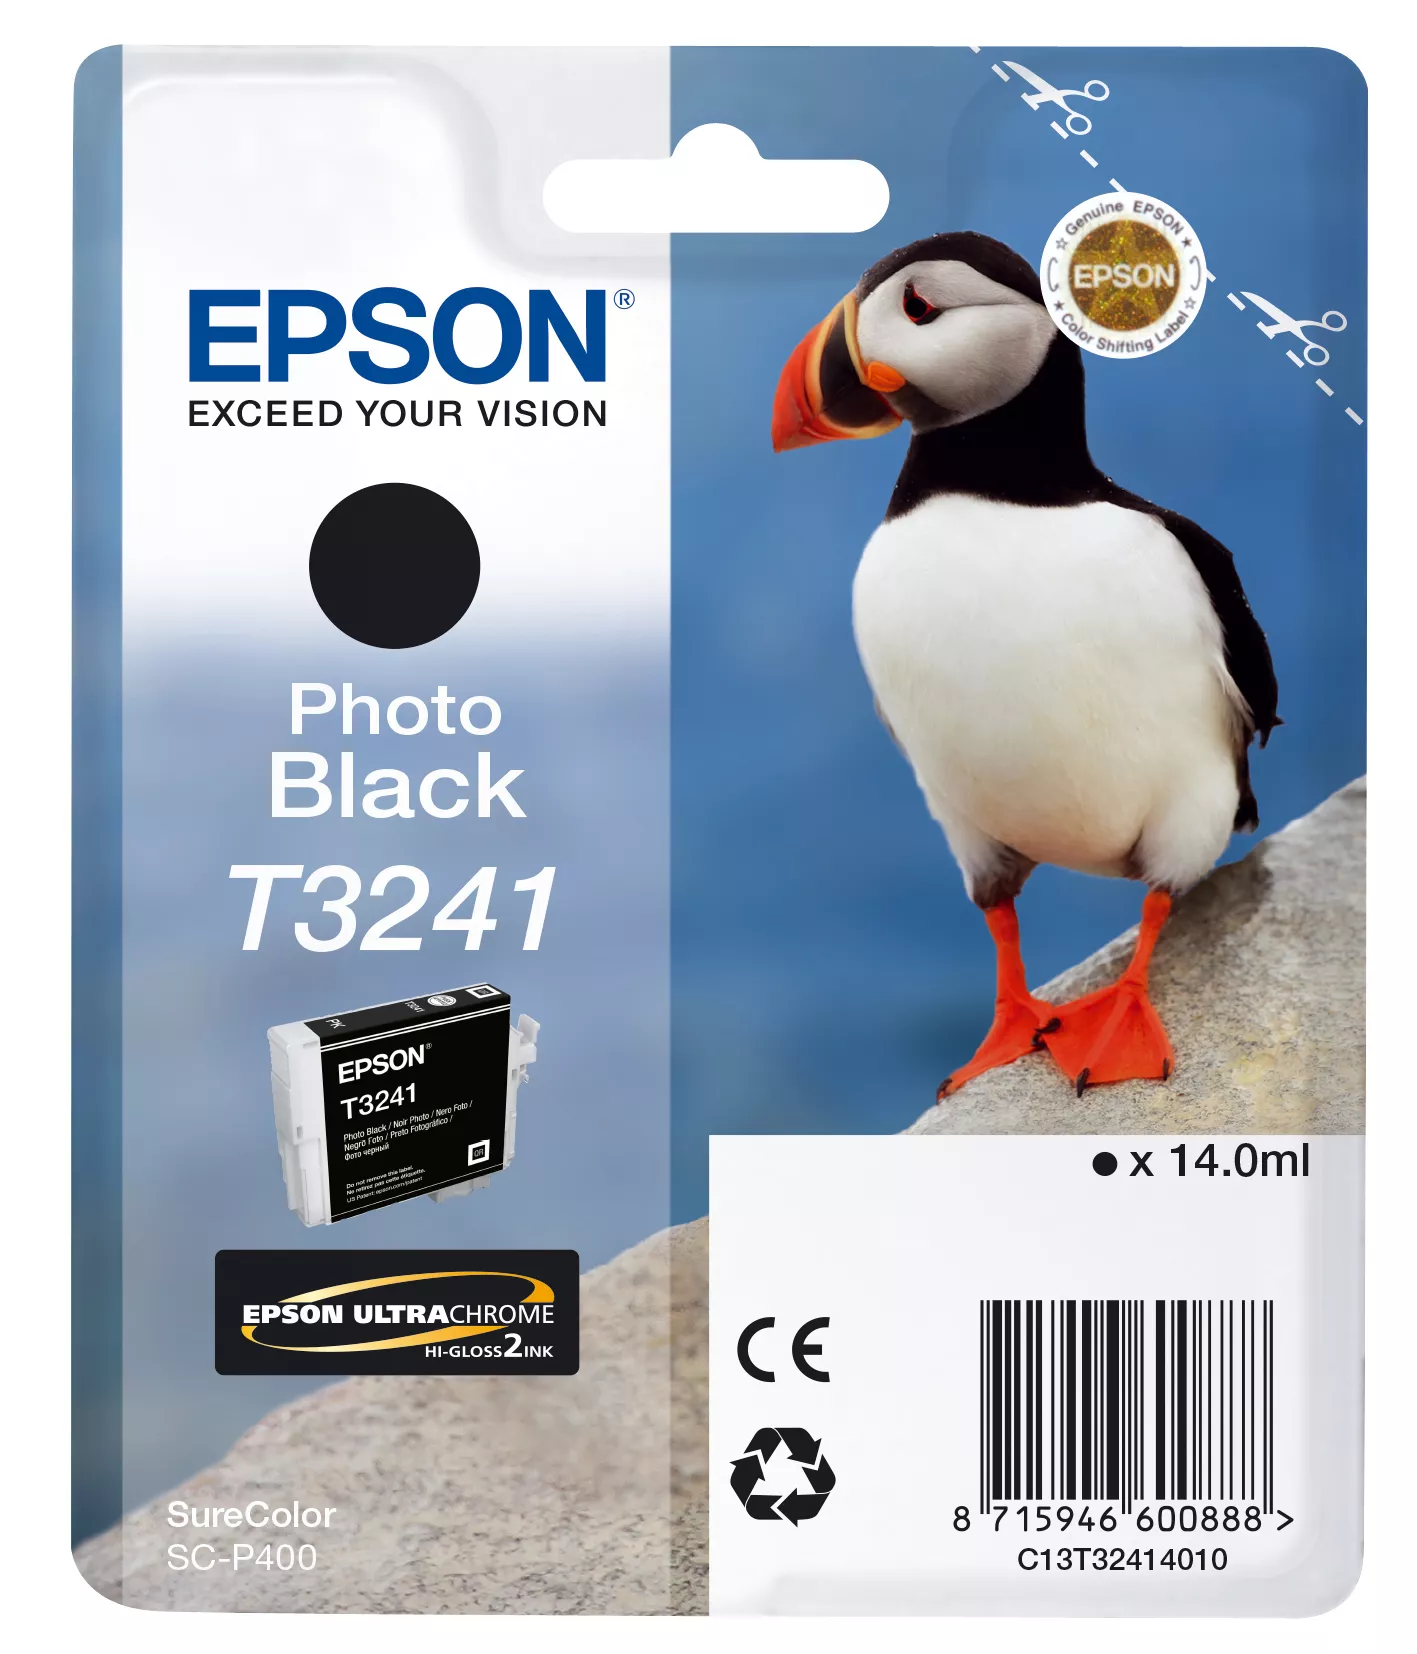 Revendeur officiel EPSON Cartouche T3241 - Noir Photo 4200 pages